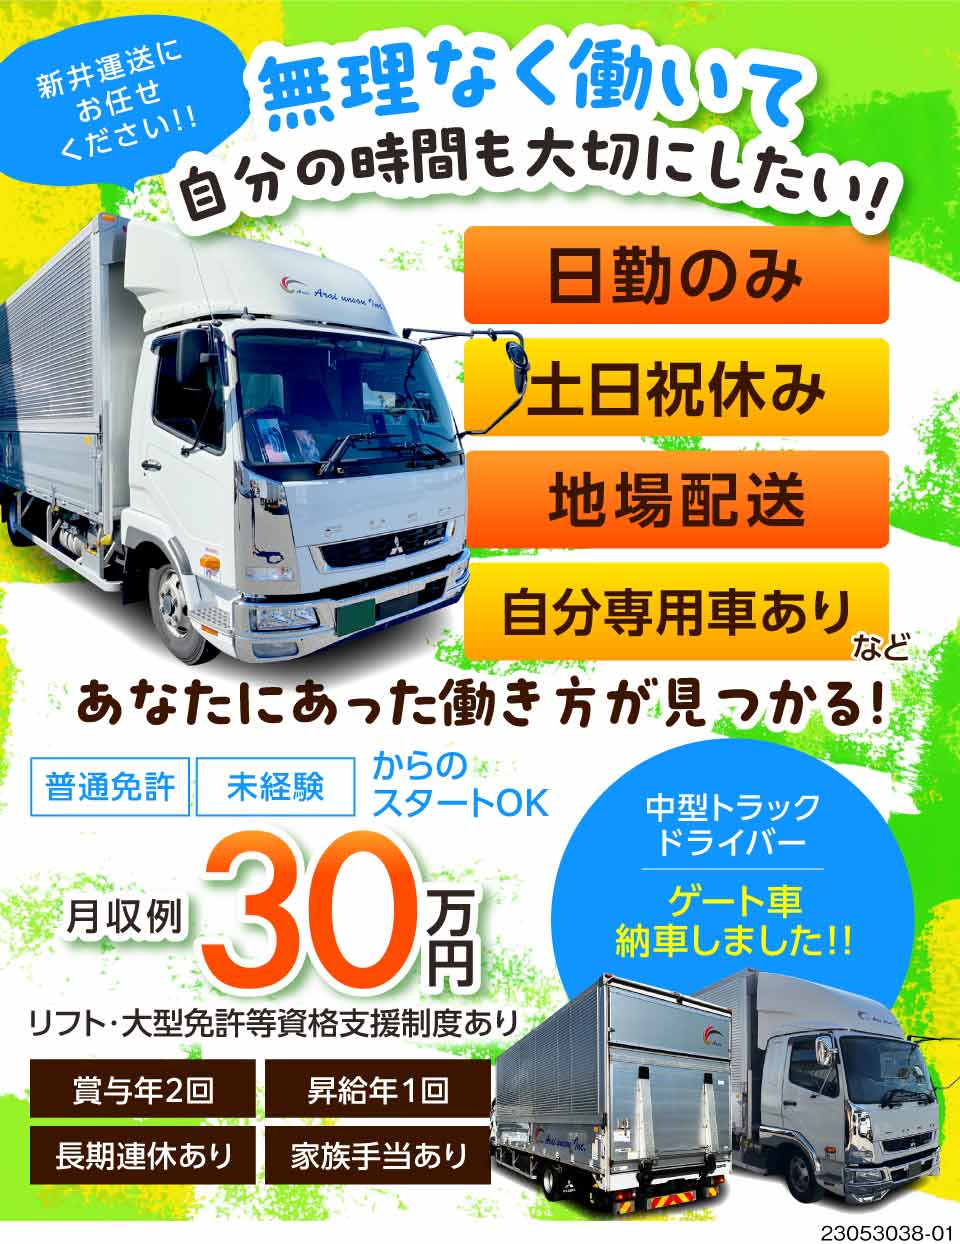 新井運送有限会社(愛知県江南市)の中型トラックドライバーのドライバー